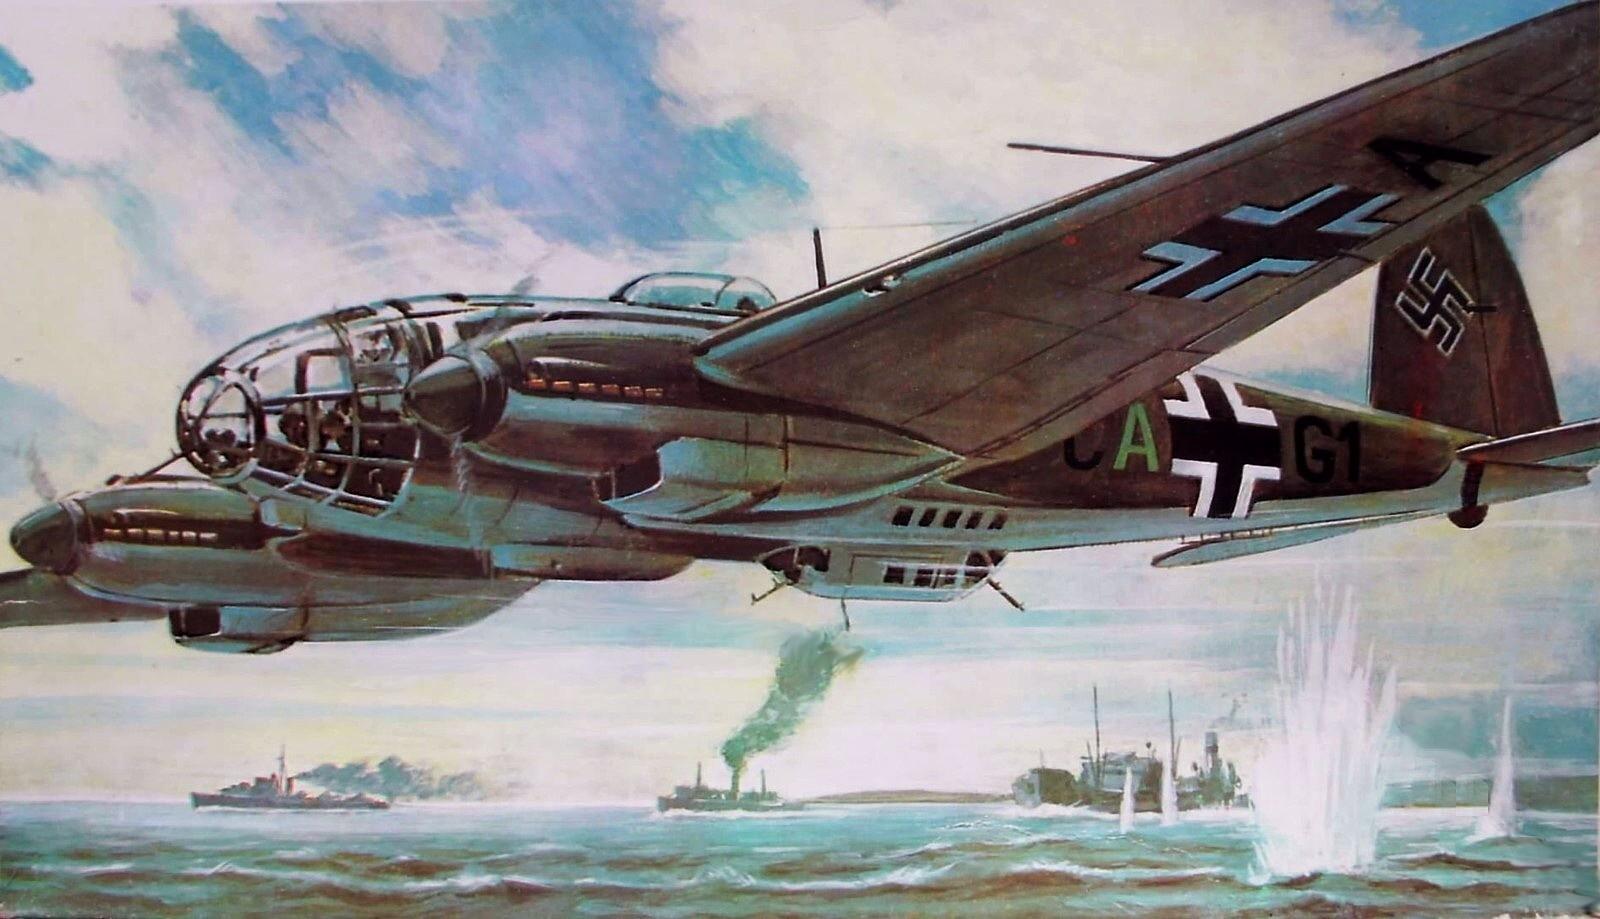 Хейнкель He 111 загрузить